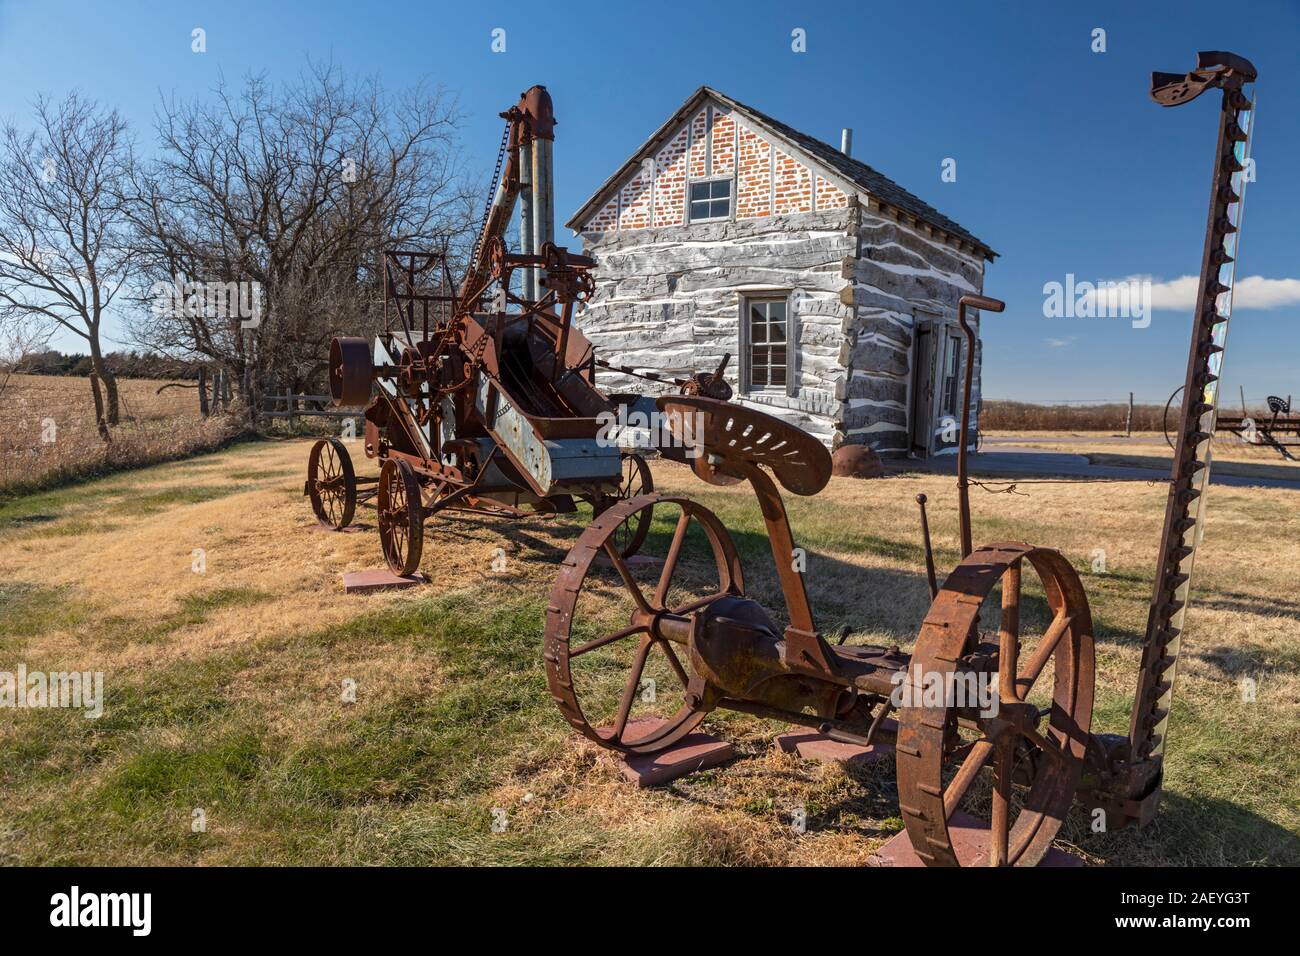 Beatrice, Nebraska - La Cabaña Palmer-Epard en Homestead, Monumento Nacional, con muebles antiguos de la maquinaria agrícola. Foto de stock